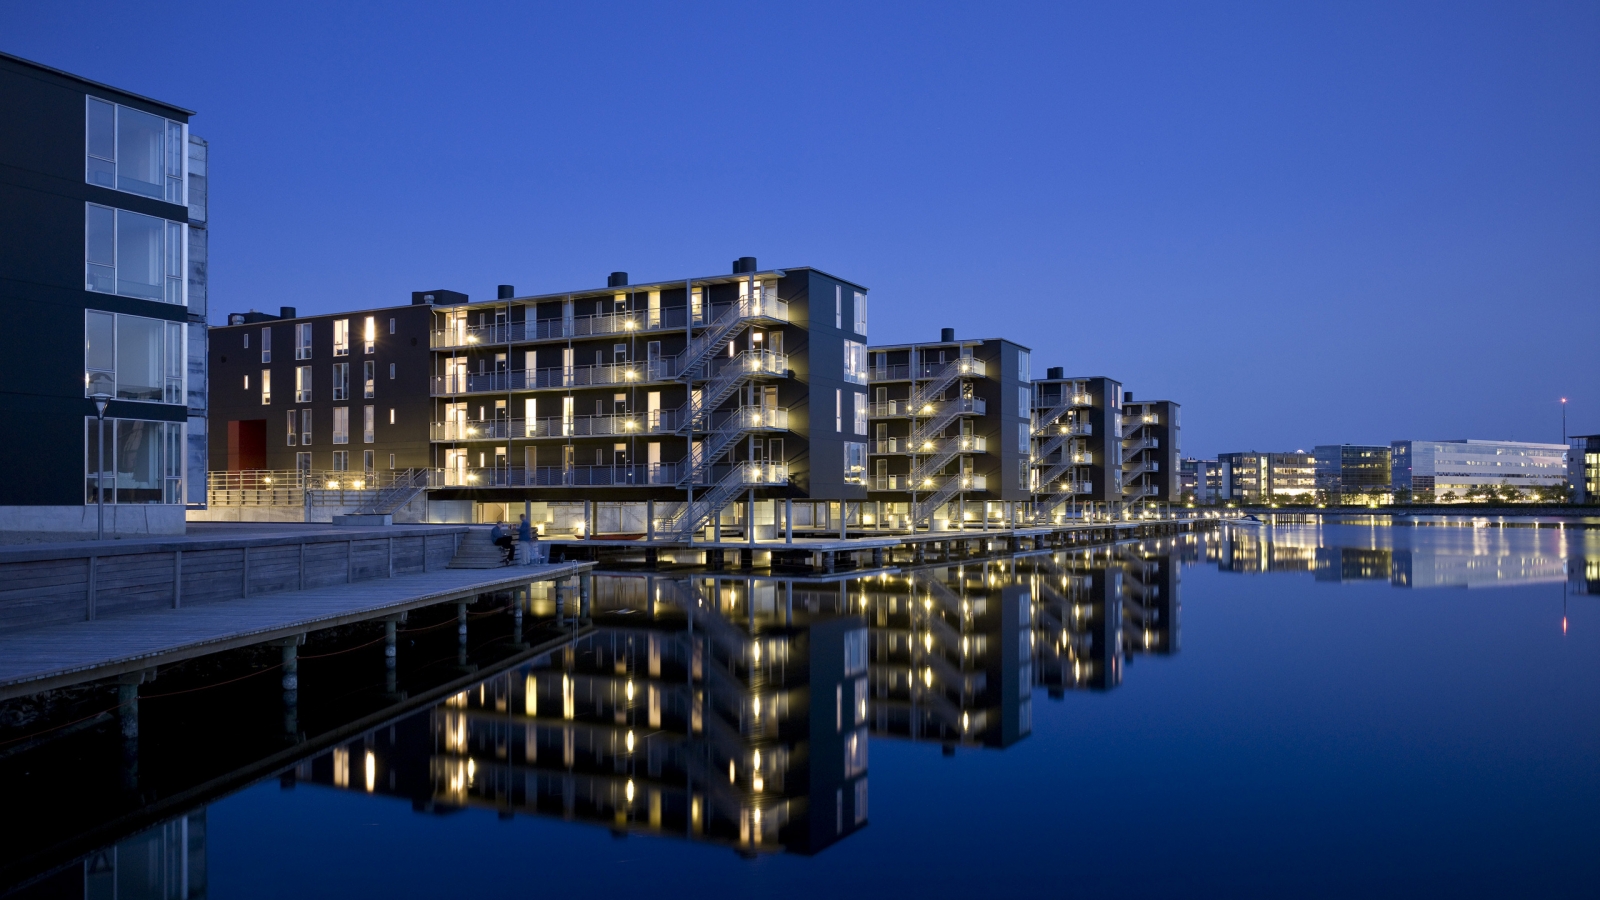 Teglvrkshavnen Block in Copenhagen for 1600 x 900 HDTV resolution